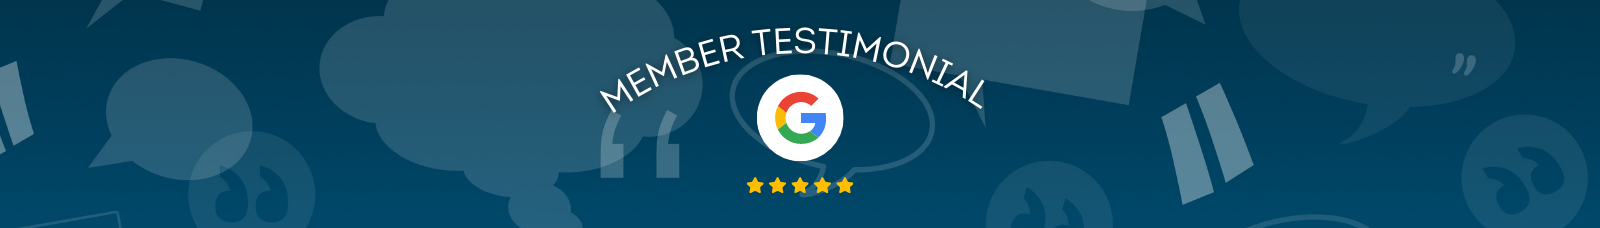 Google Review Member Testimonial